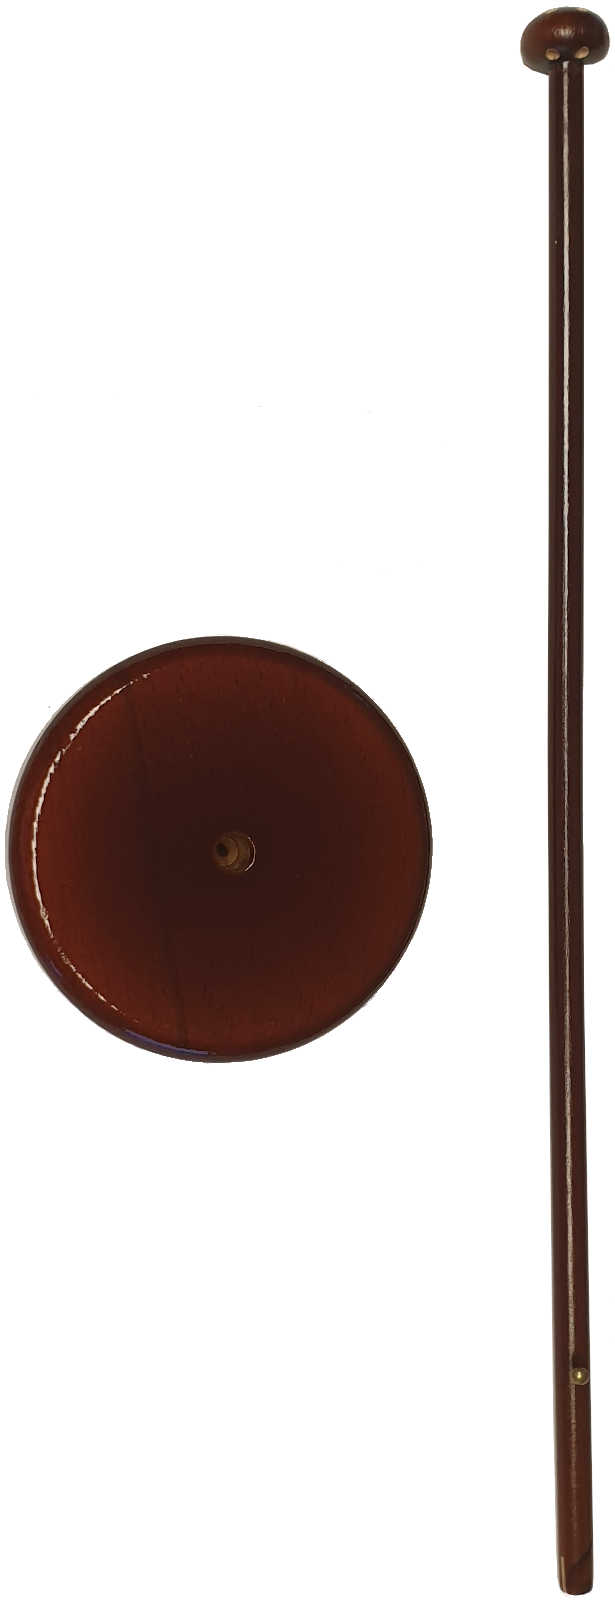 Tischflaggenständer Holz Farbe Mahagoni Fuß glatt zweiteilig